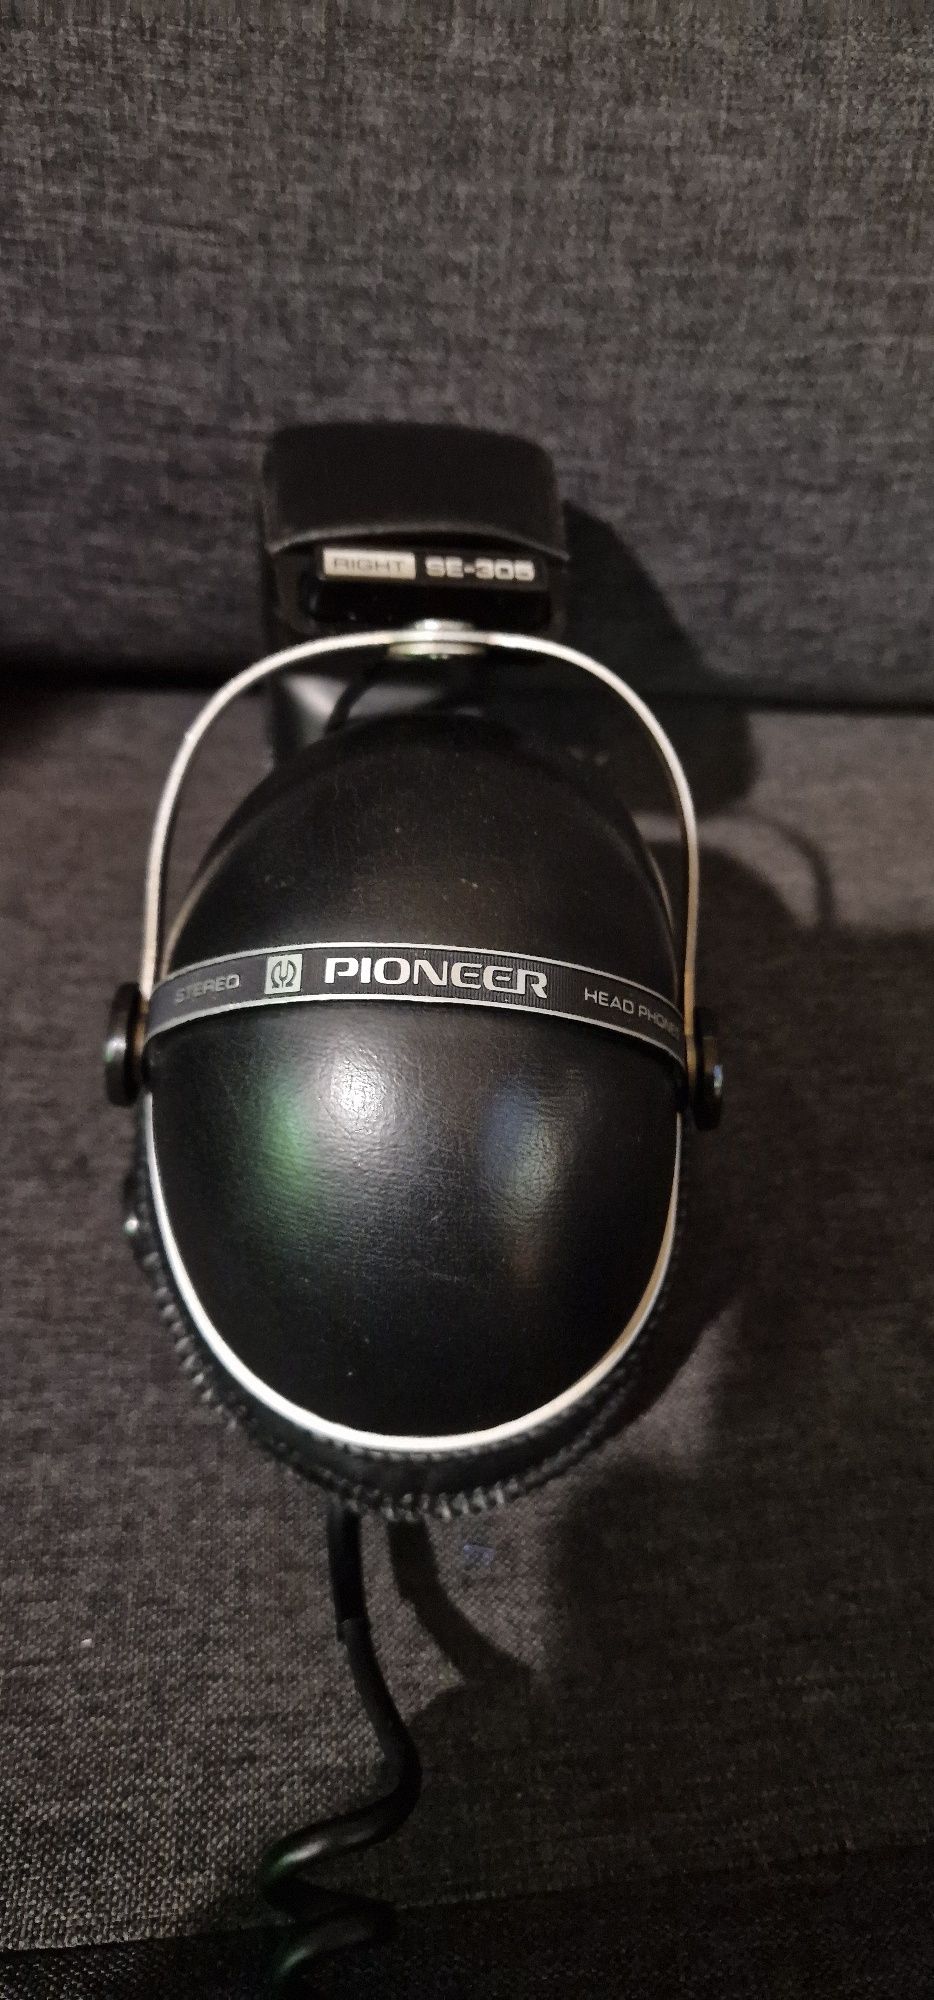 Słuchawki Pioneer SE-305 HI FI